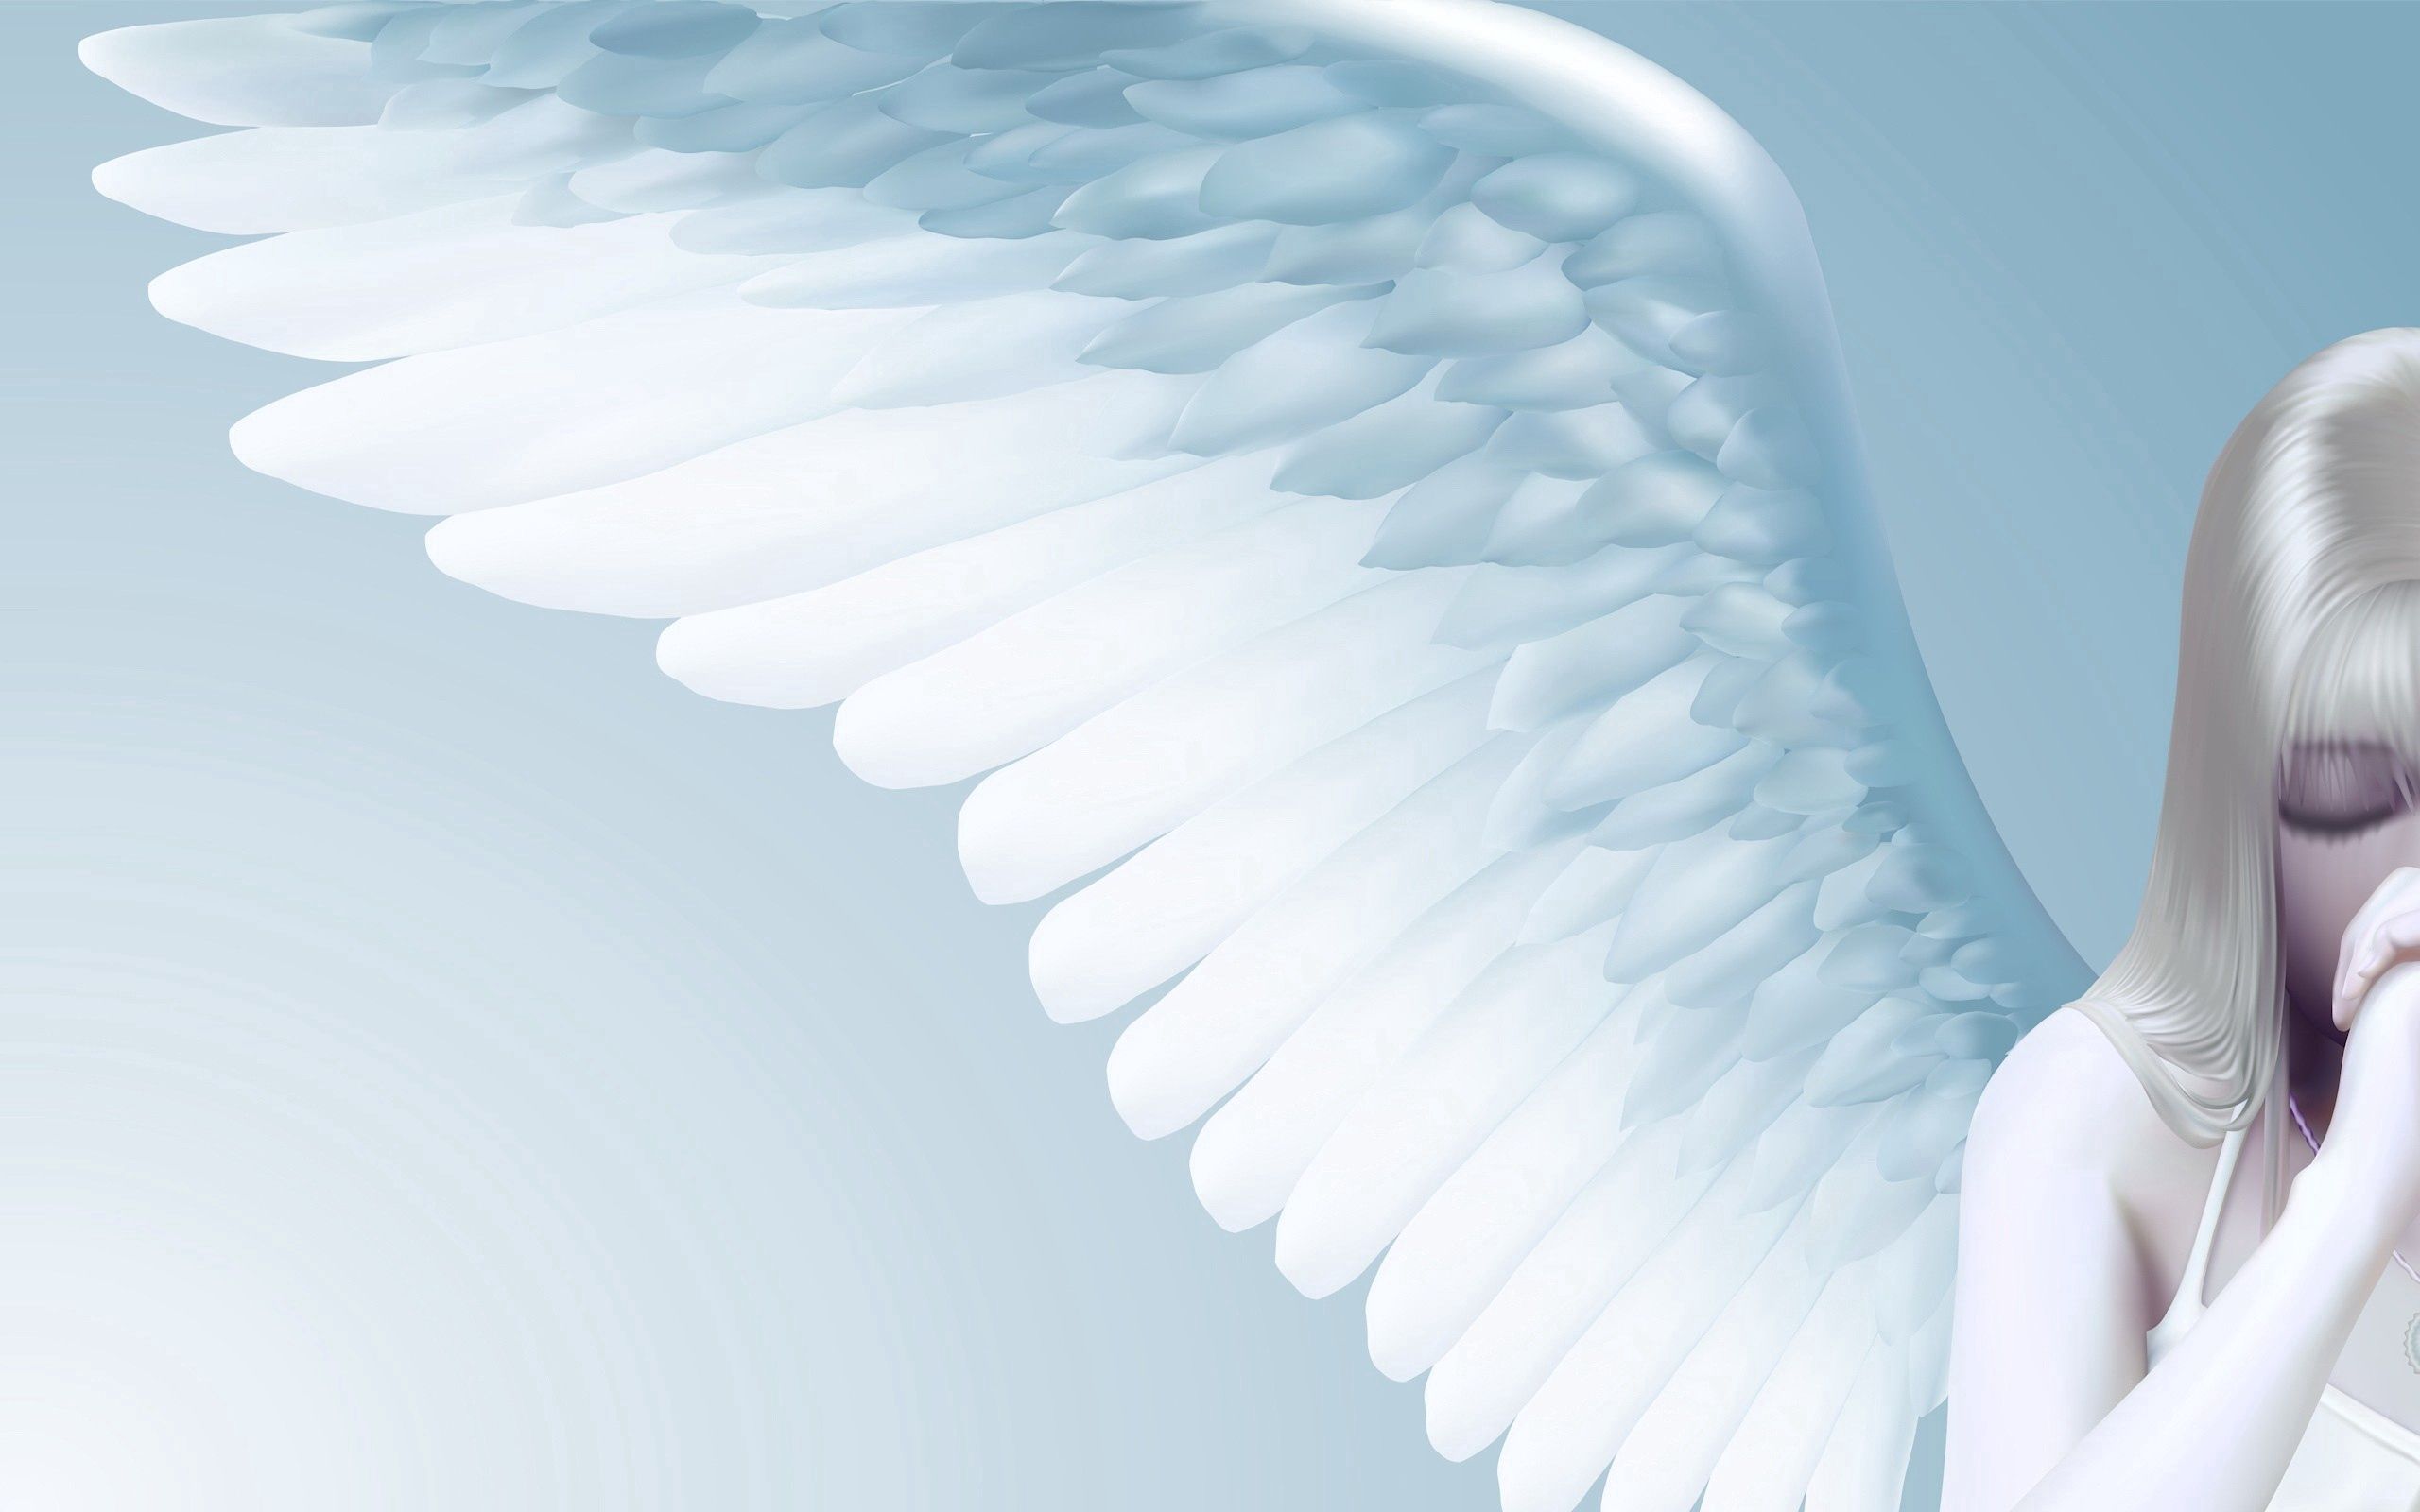  Wunderschöne Engel Hintergrundbild 2560x1600. Laden Sie Das Engel Hintergrundbild Für Ihr Handy In Hochwertigen, Hintergrundbildern Engel Kostenlos Herunter